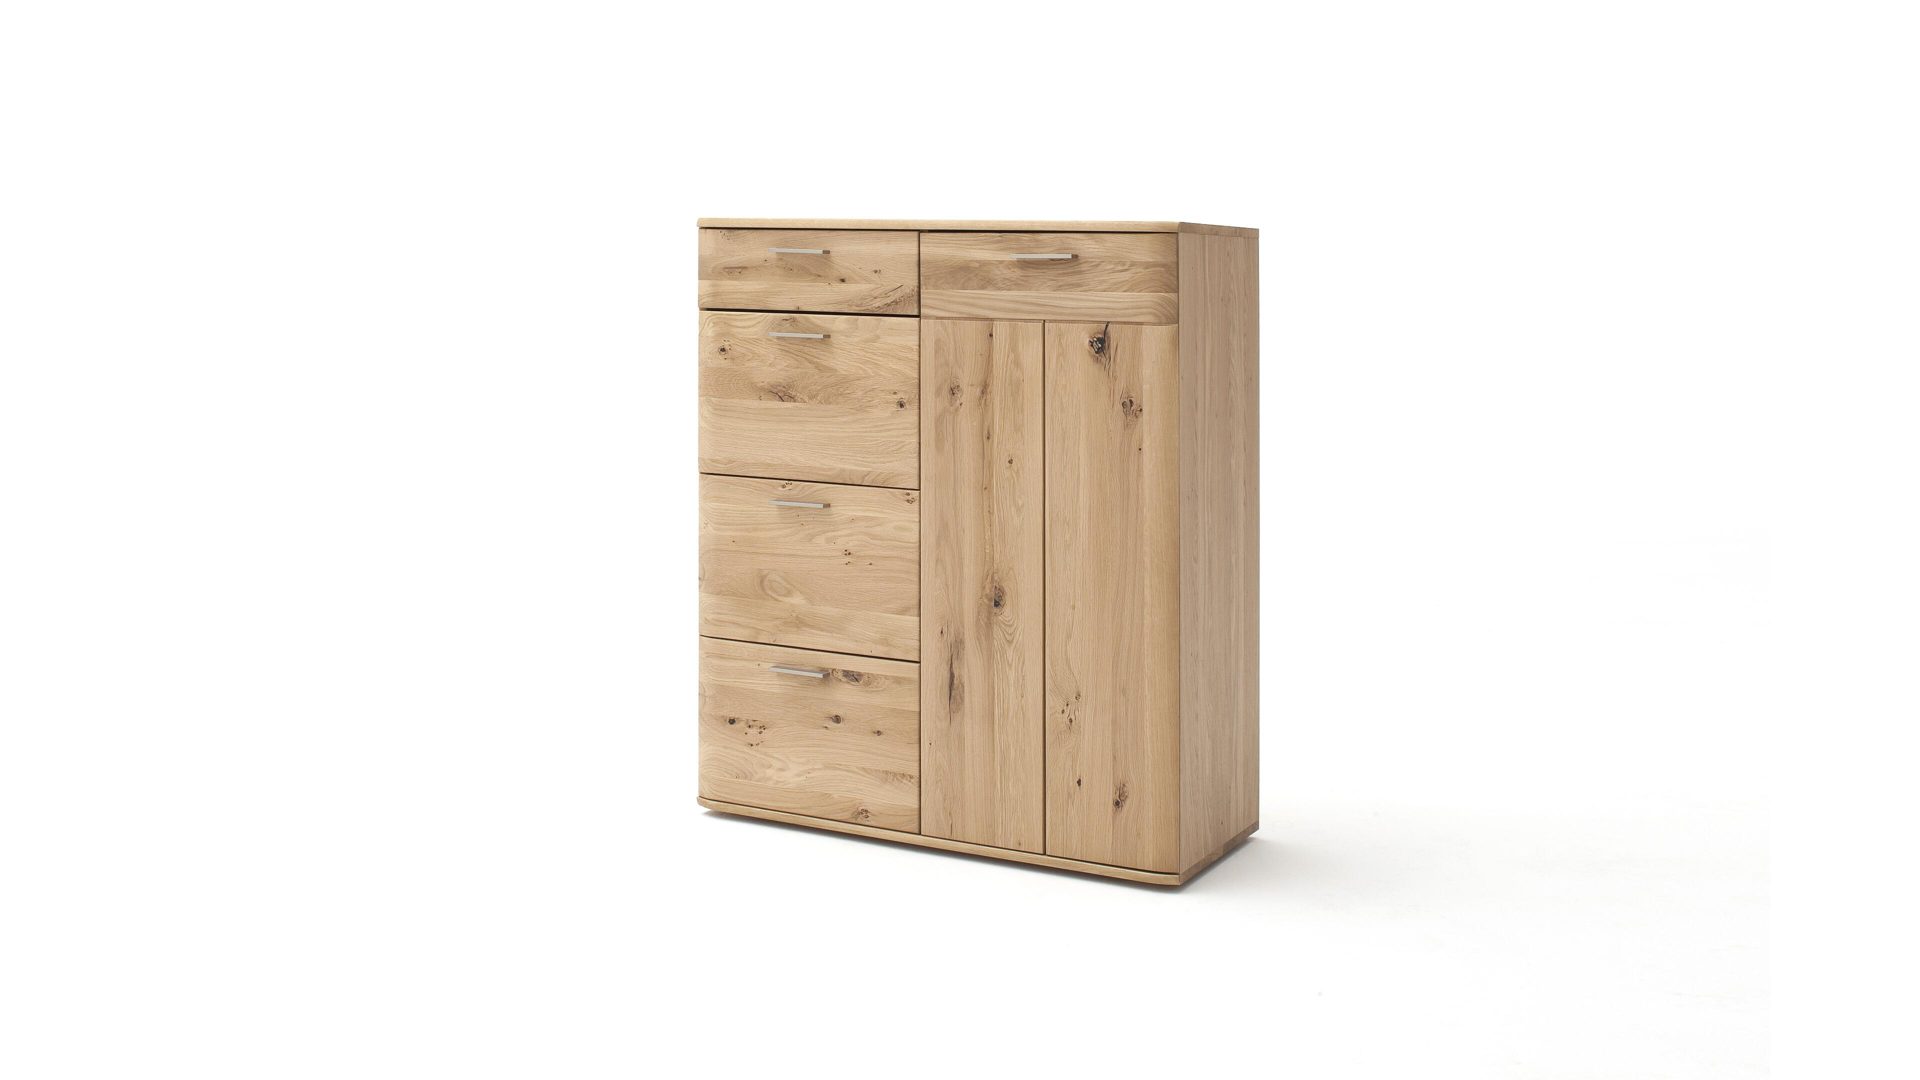 Kombikommode Mca furniture aus Holz in Holzfarben Kombikommode biancofarbene Balkeneiche – eine Tür, vier Schubladen